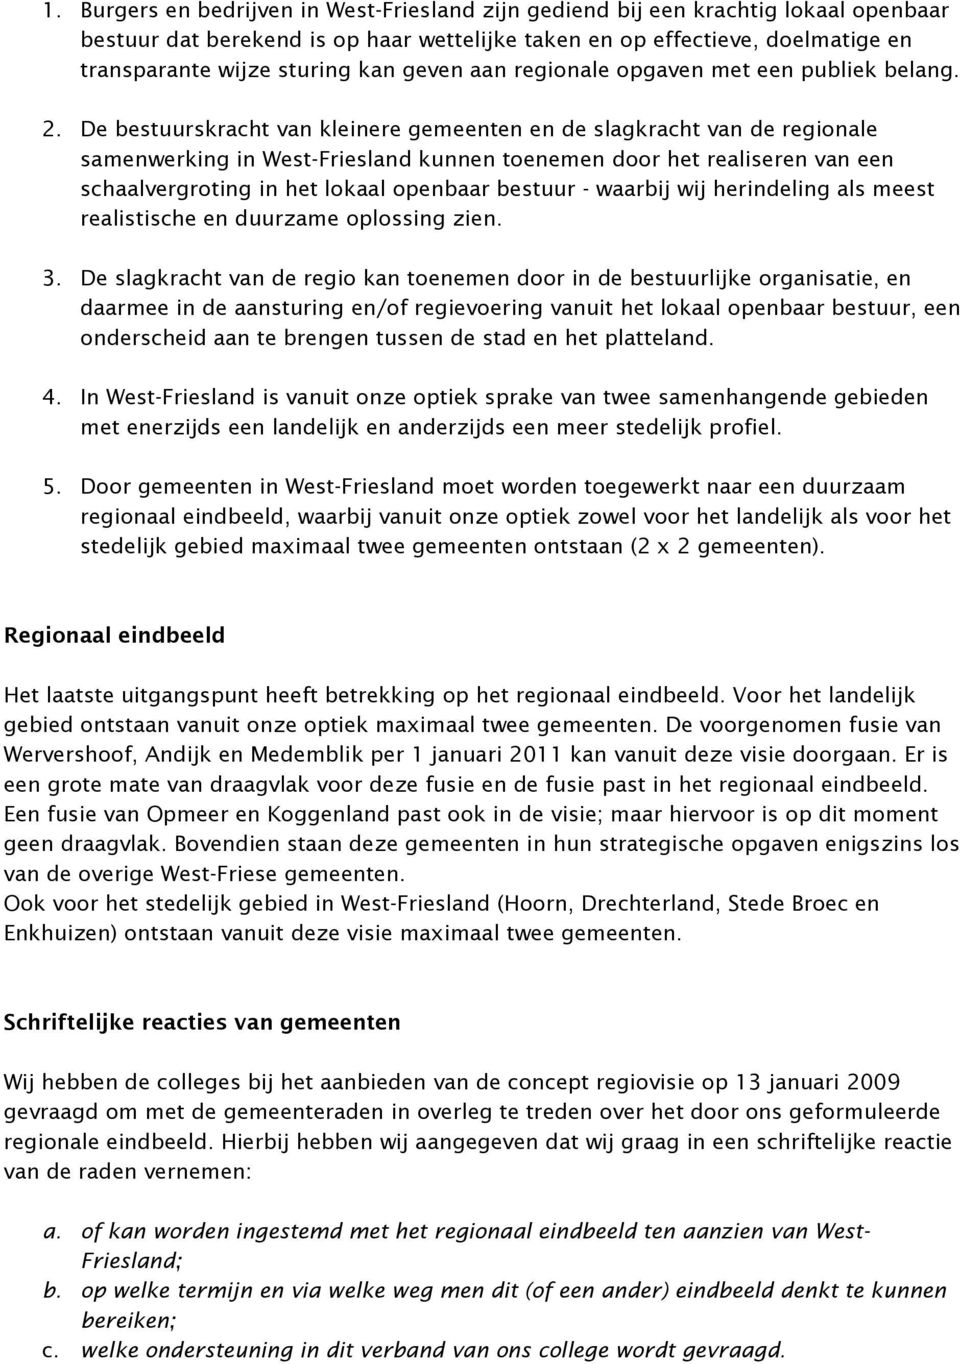 De bestuurskracht van kleinere gemeenten en de slagkracht van de regionale samenwerking in West-Friesland kunnen toenemen door het realiseren van een schaalvergroting in het lokaal openbaar bestuur -